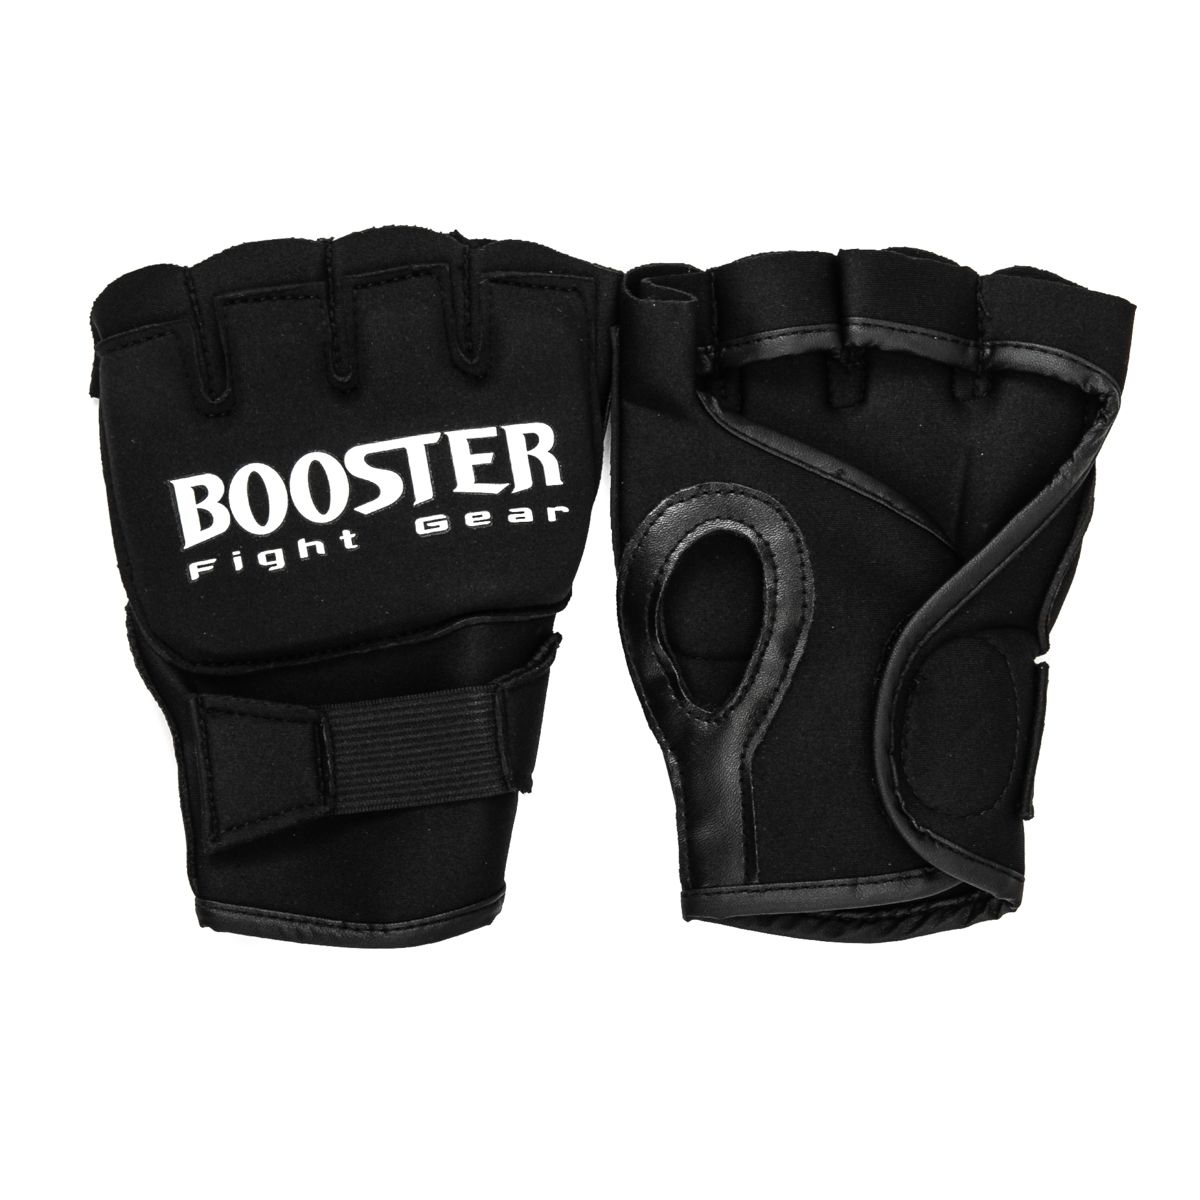 Booster Fightgear - Bandage -GEL KNUCKLE